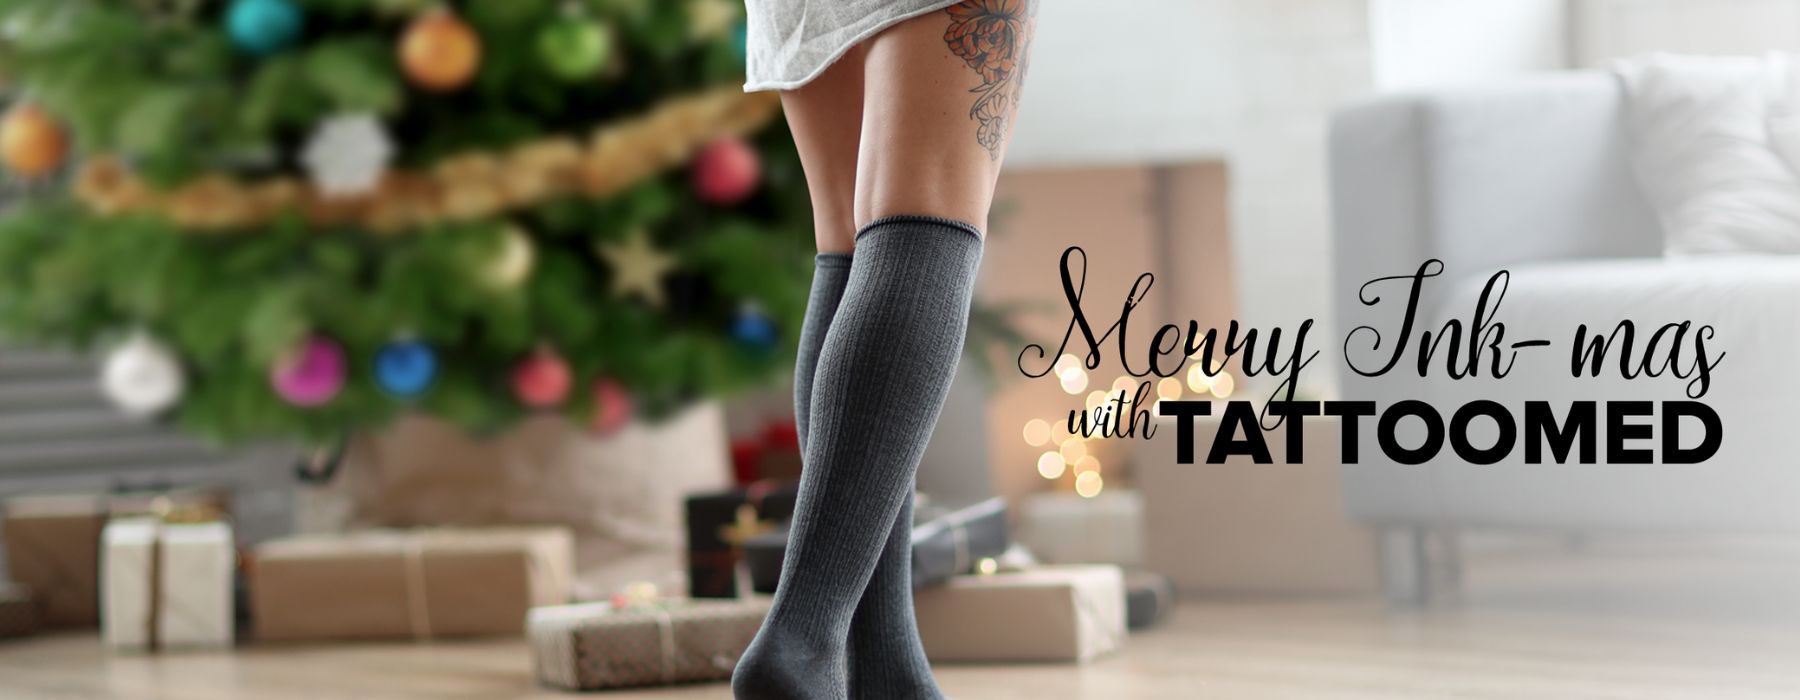 TattooMed feiert Weihnachten mit dir - tätowierte Personen vor Weihnachtsbaum